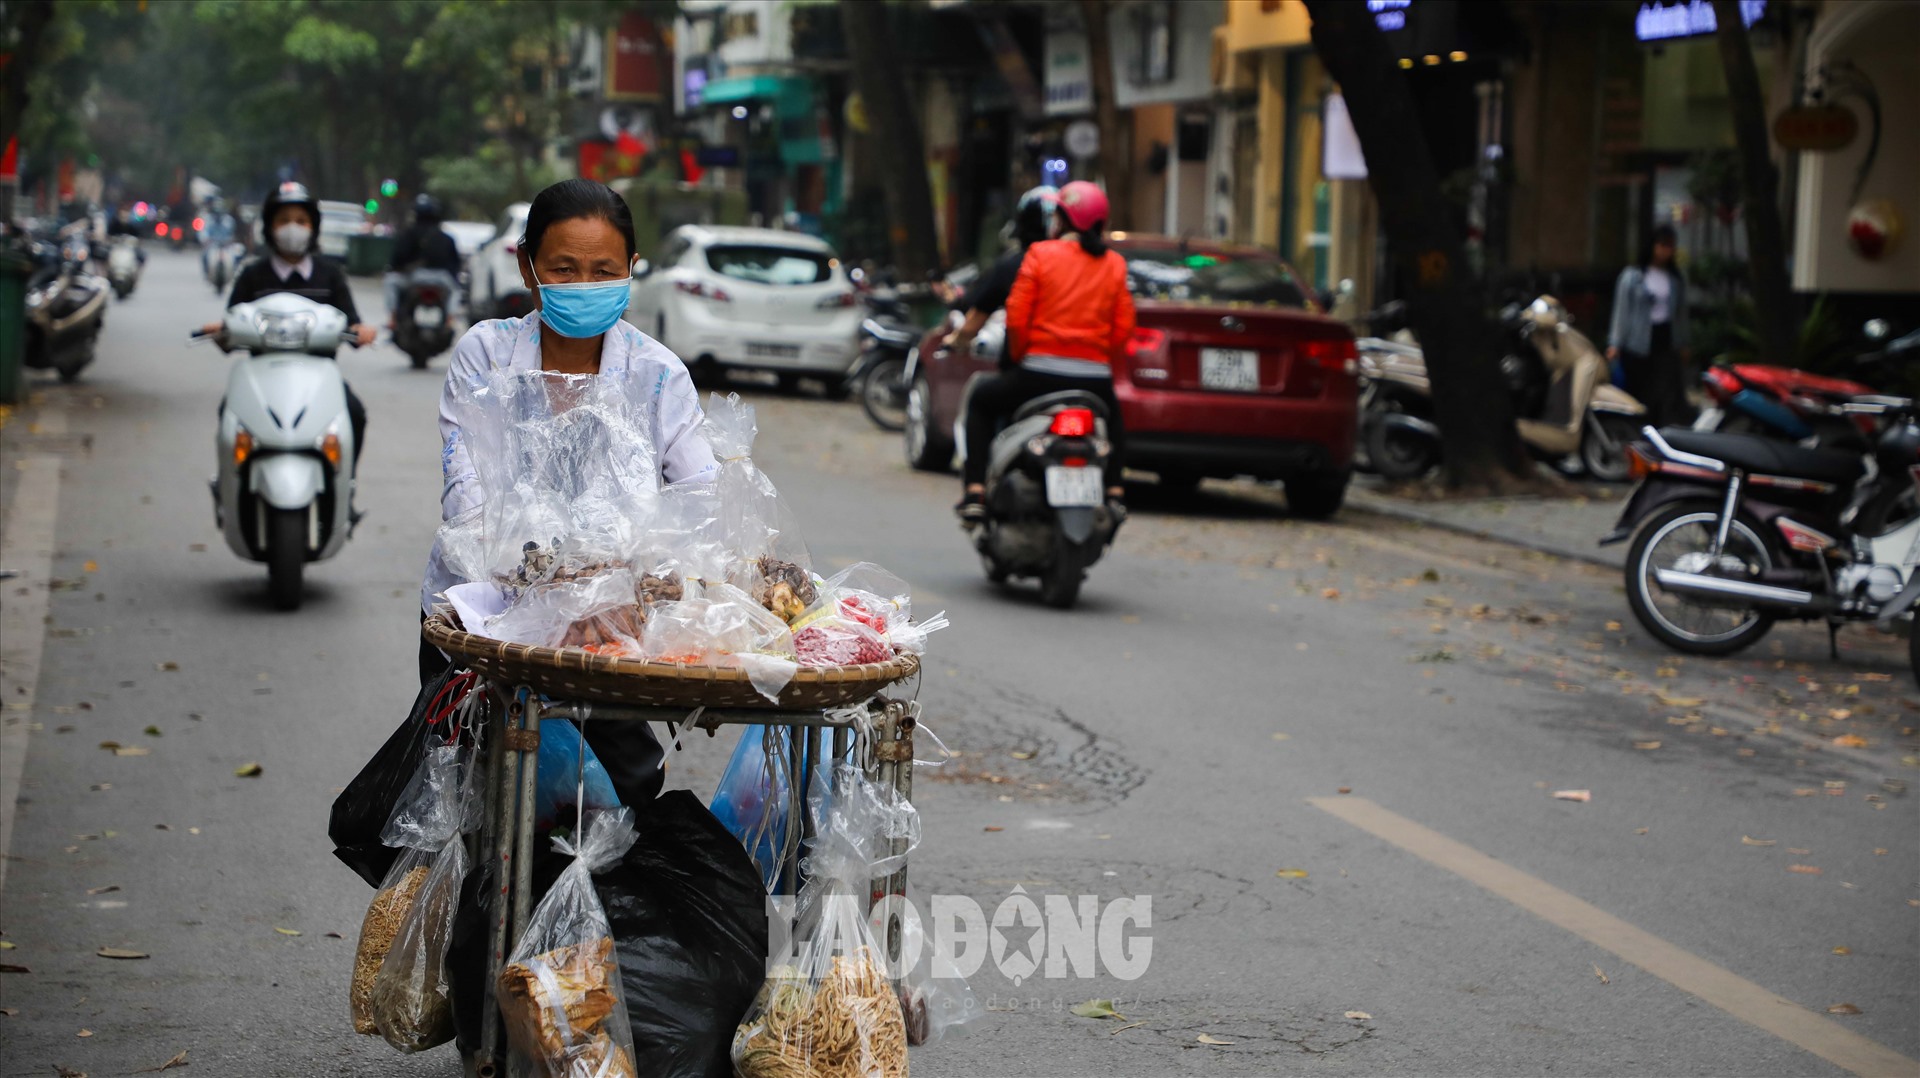 Tuy nhiên, theo khảo sát thực tế và thông tin trên 1 số trang tin bất động sản, giá đất tại nhiều tuyến phố nội thành Hà Nội cao gấp nhiều lần so với mức niêm yết của UBND.